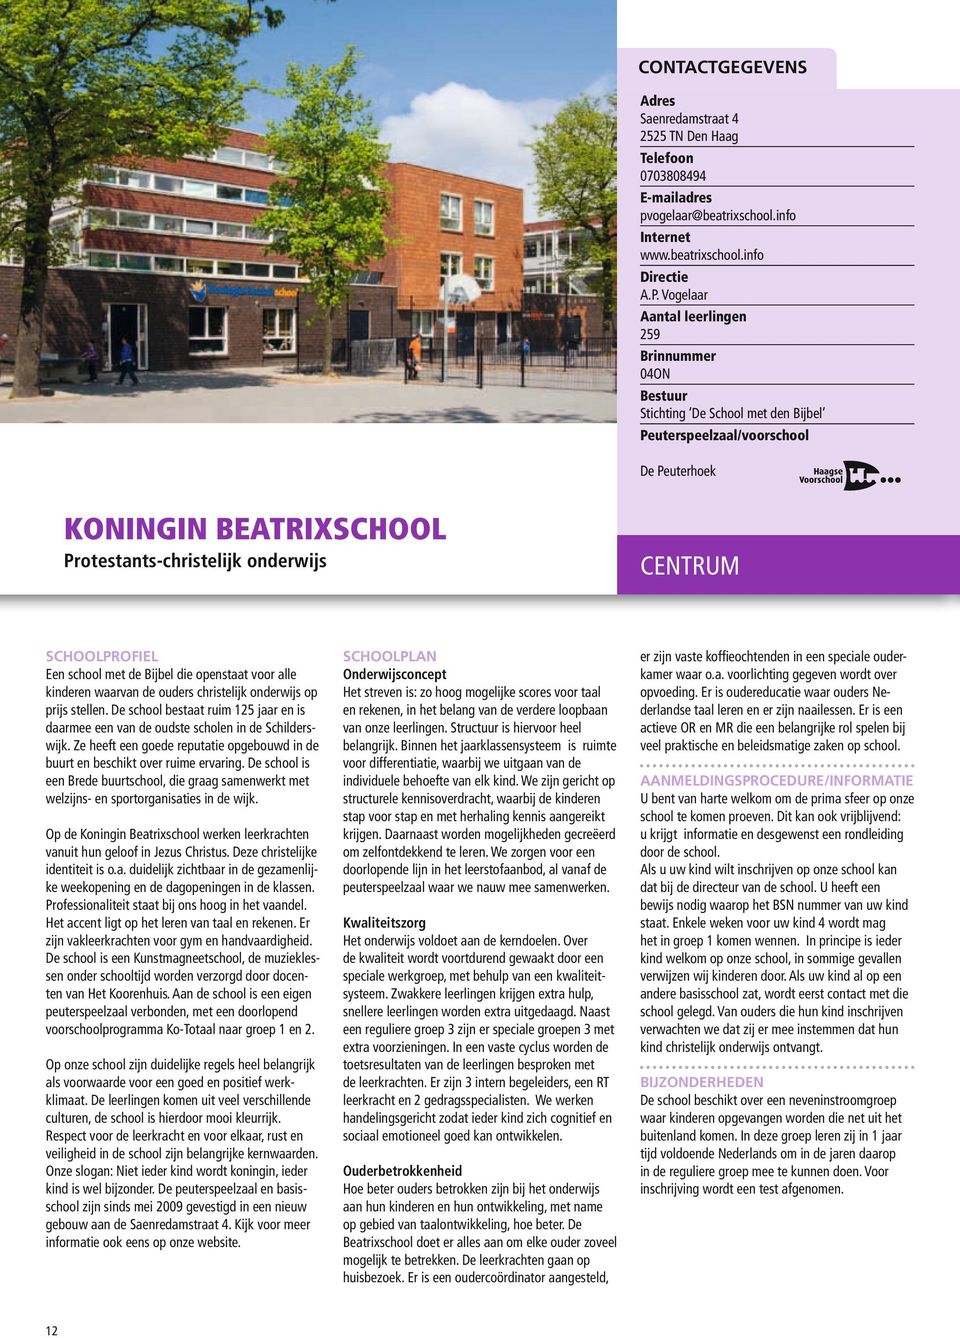 christelijk onderwijs op prijs stellen. De school bestaat ruim 125 jaar en is daarmee een van de oudste scholen in de Schilderswijk.